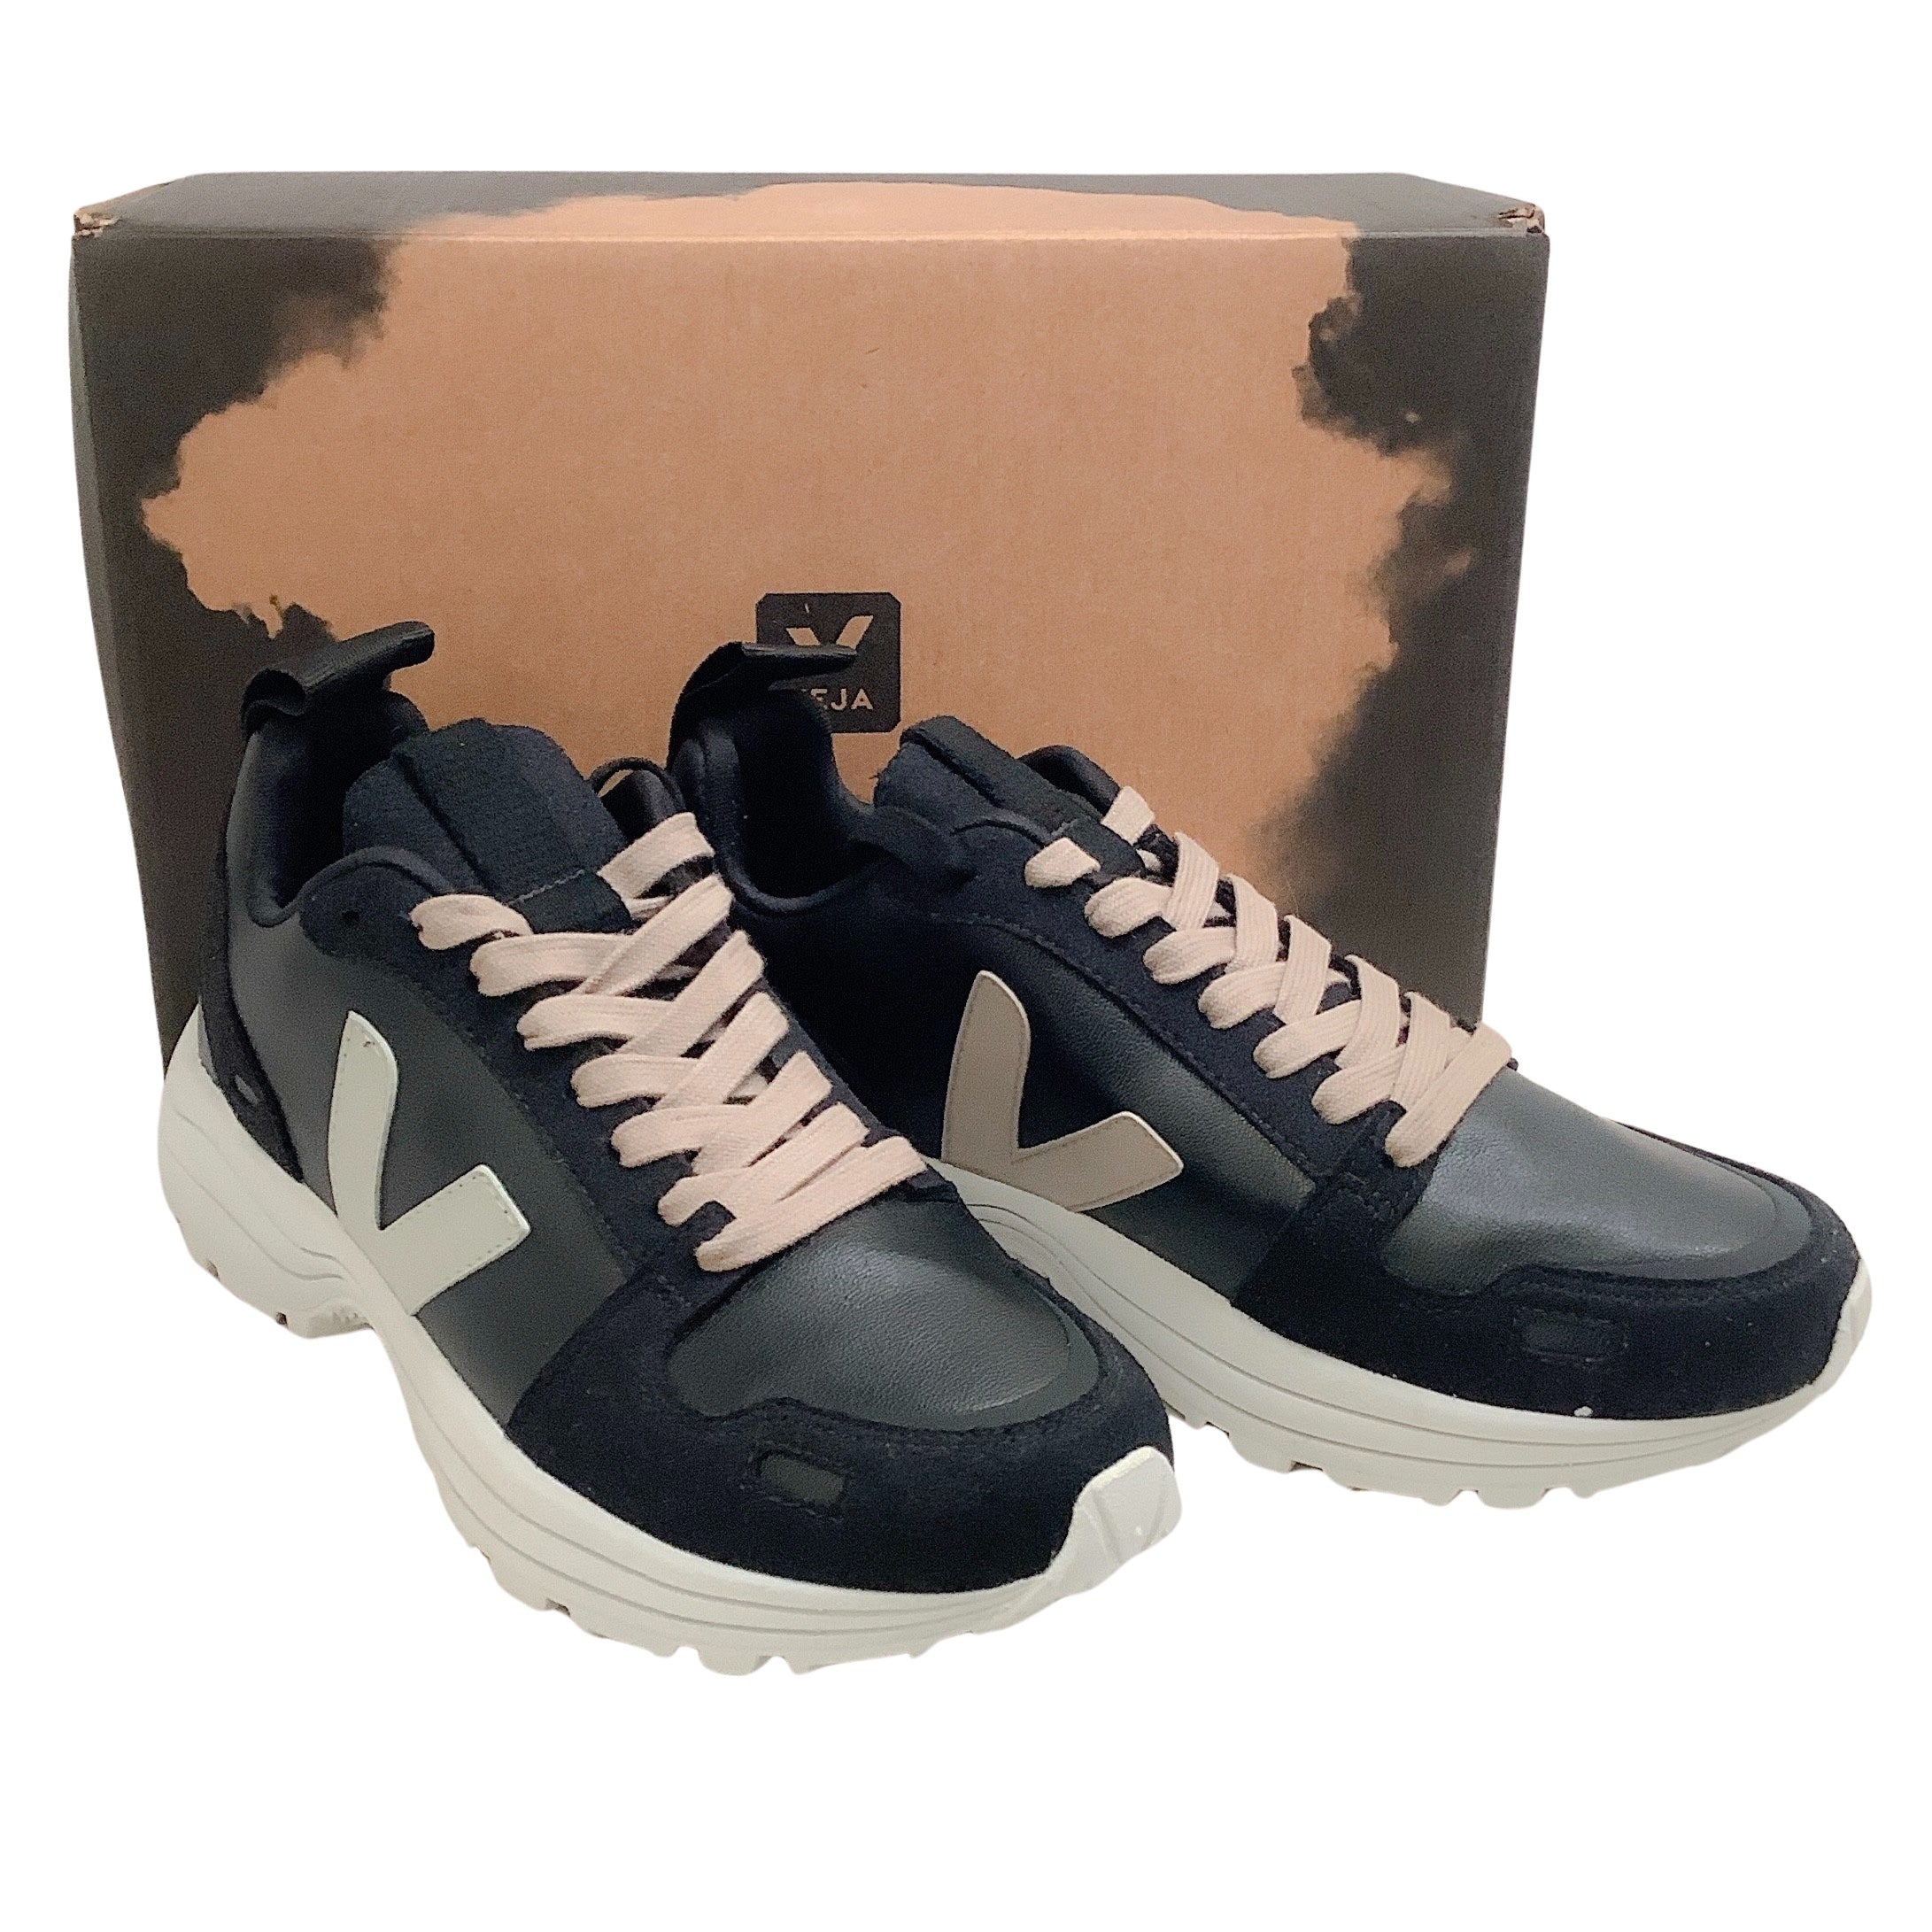 Rick Owens x Veja Black Pearl Hiking Sneakers